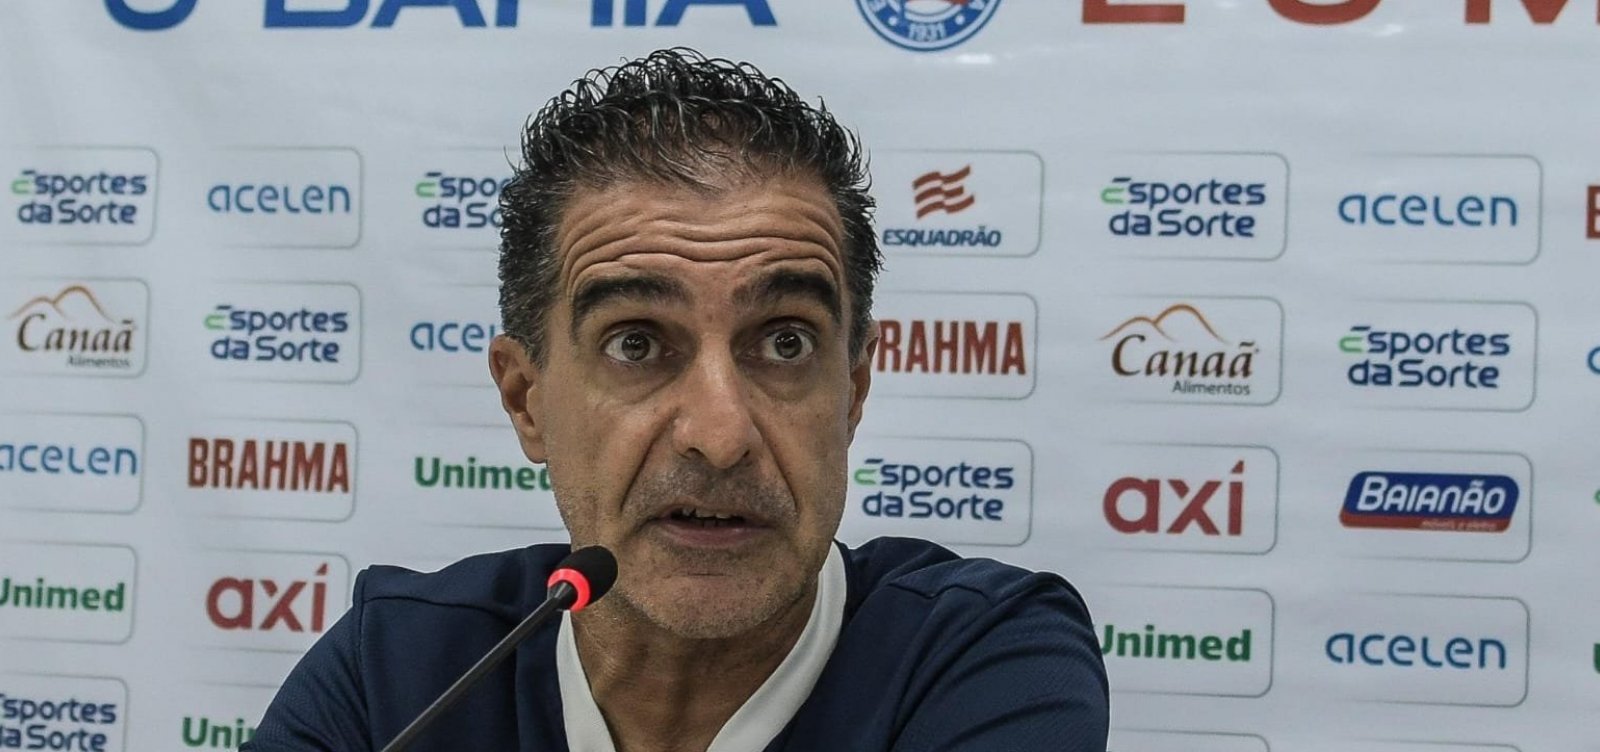 Treinador Renato Paiva pede demissão do Bahia